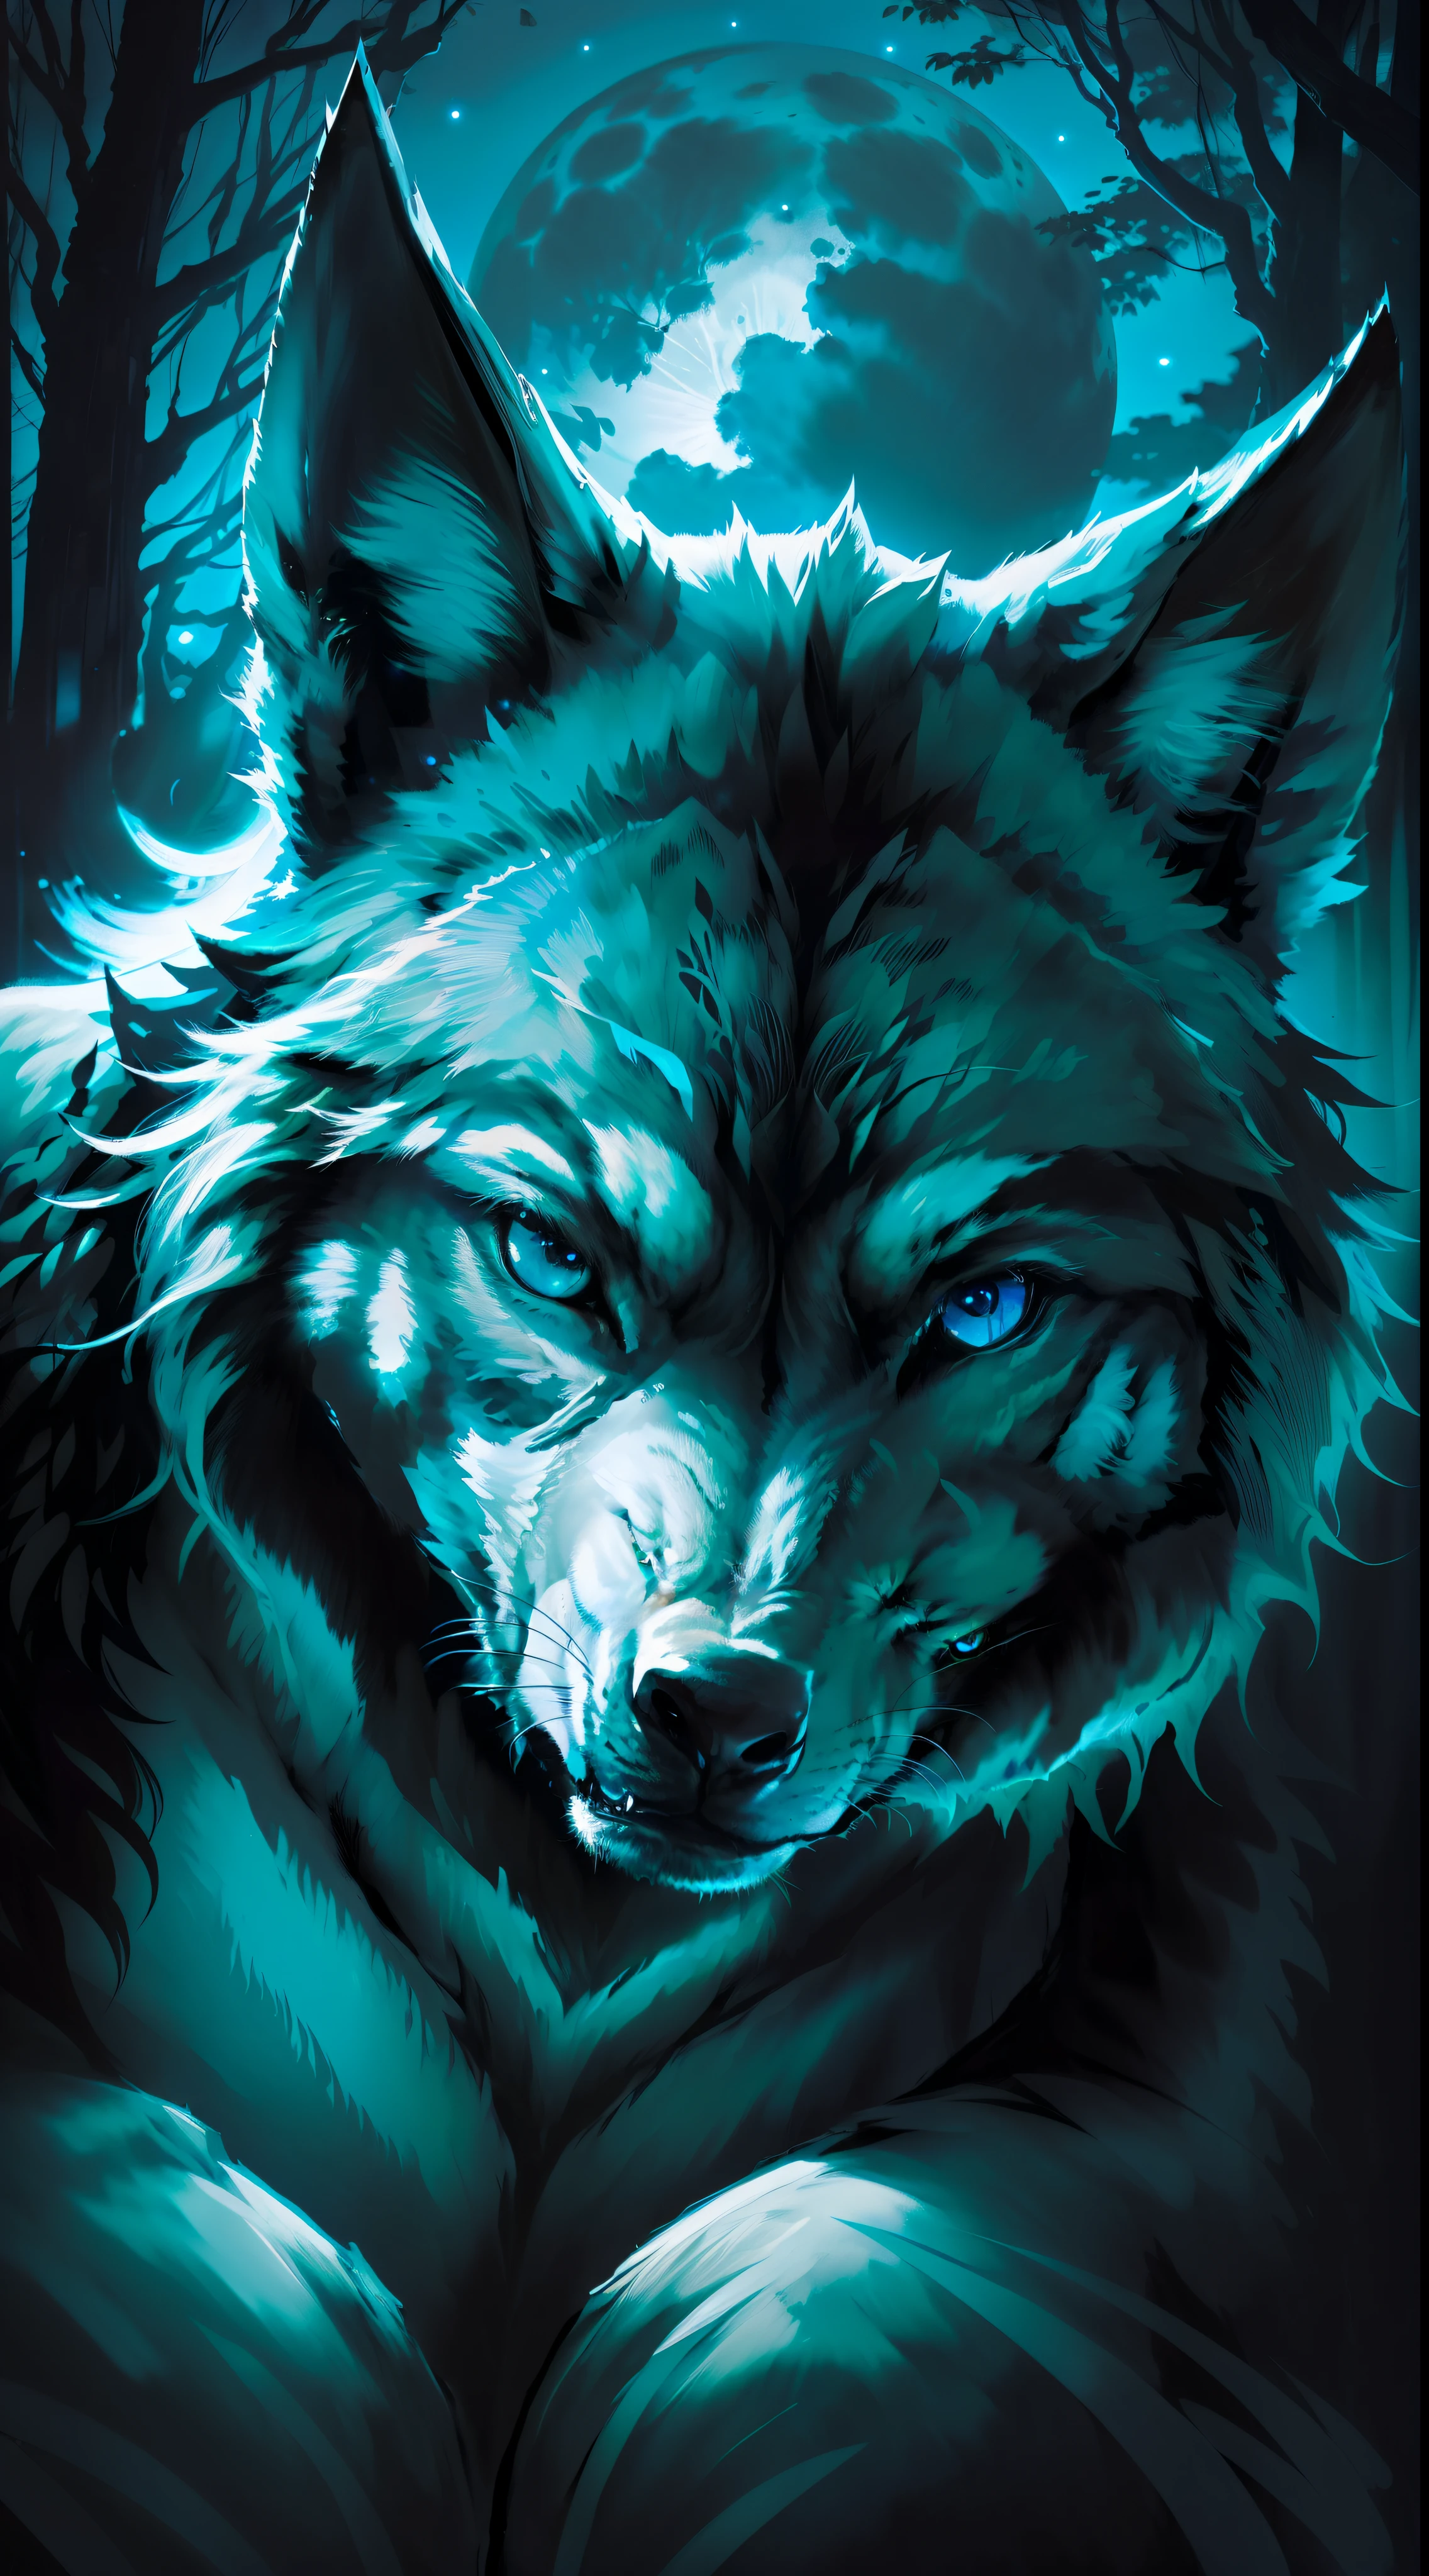 (Obra maestra detallada de alta calidad de imagen) "Color negro con ojos azules" Bosque peligroso de lobos, medianoche, Luna llena. 1 lóbulo solitario. ( Ángulo frontal de la imagen) ( Abrir imagen) Color Lobo Negro.